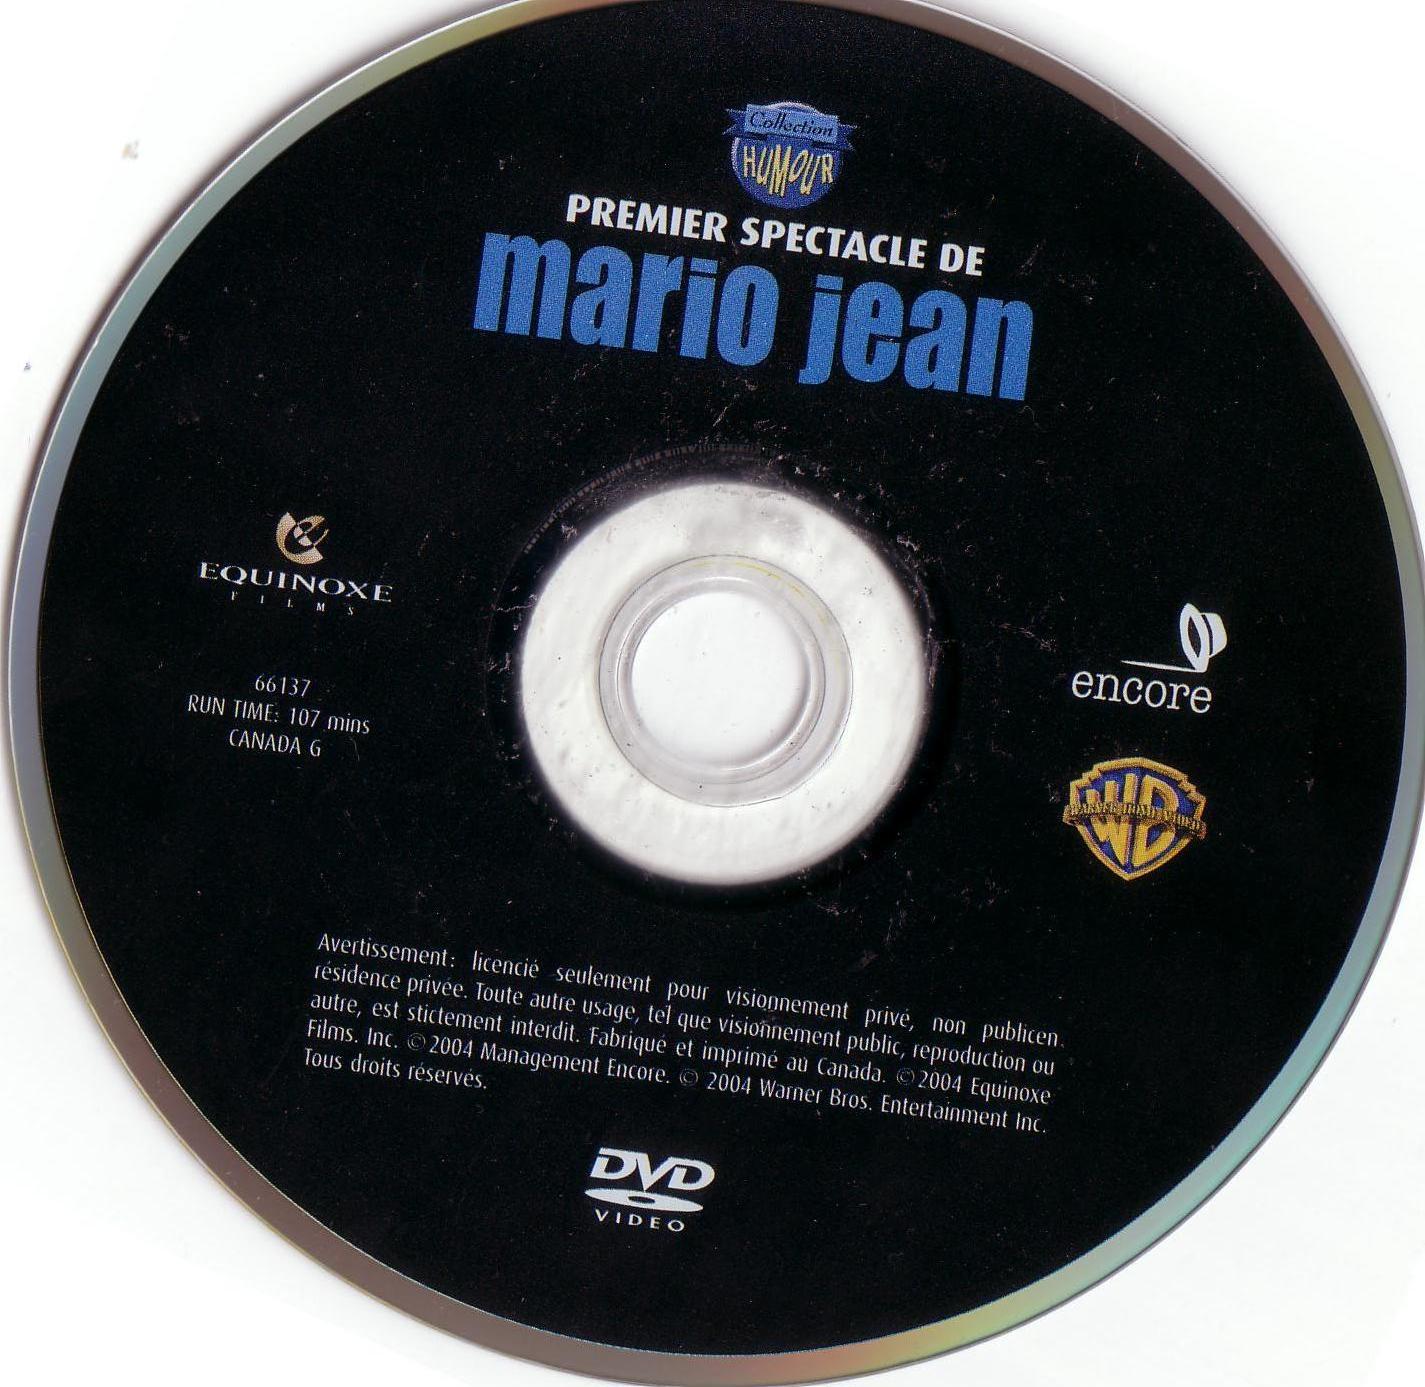 Mario Jean